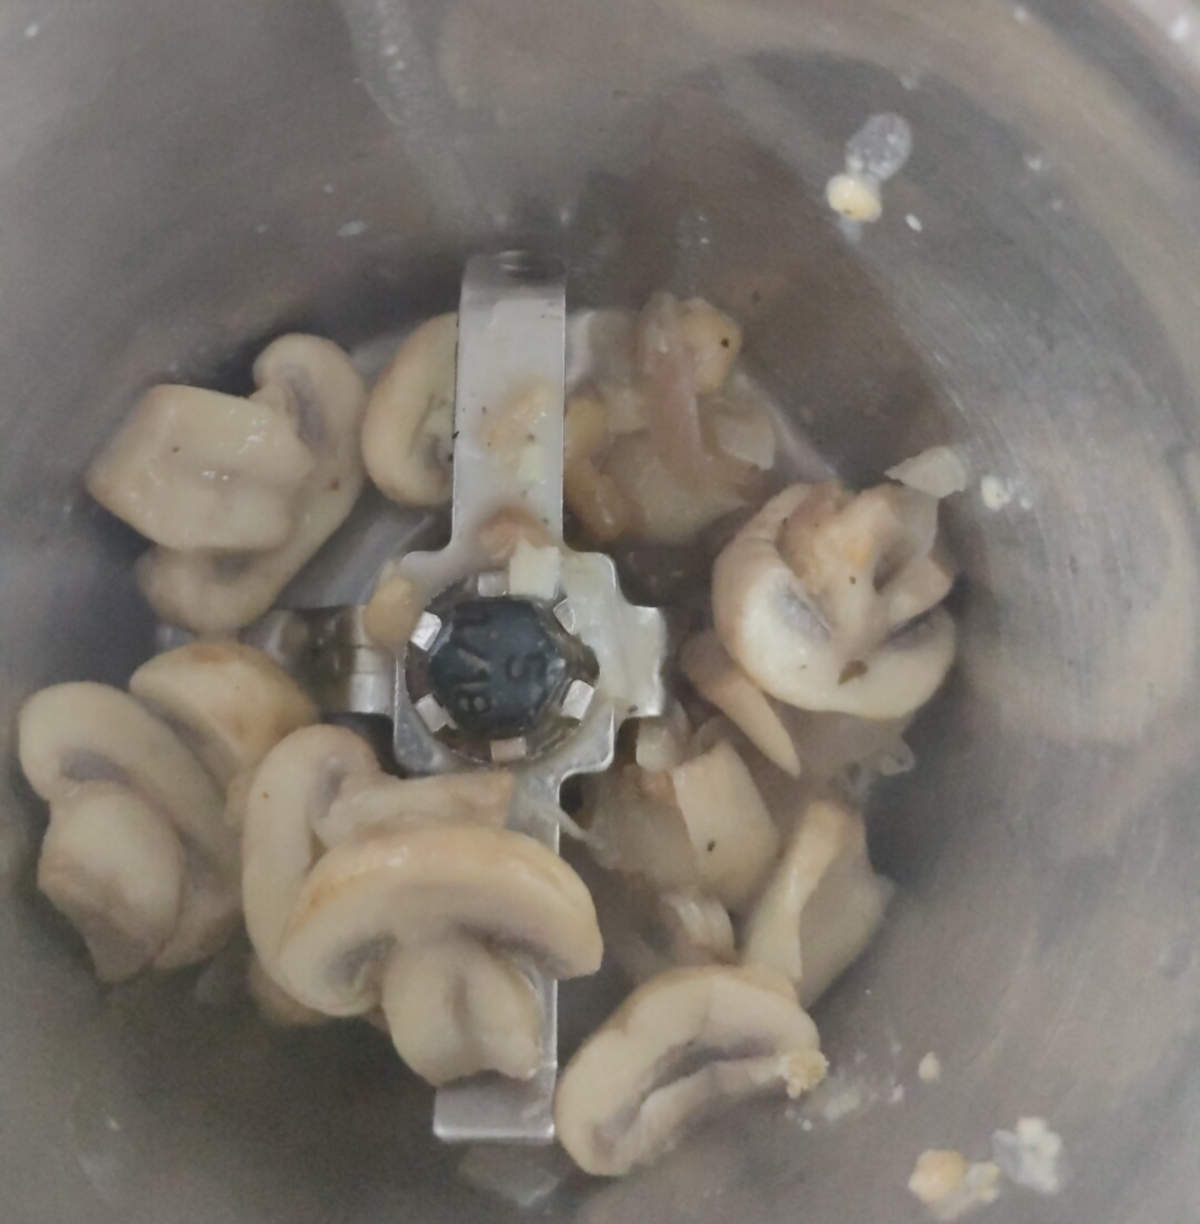 blending mushrooms